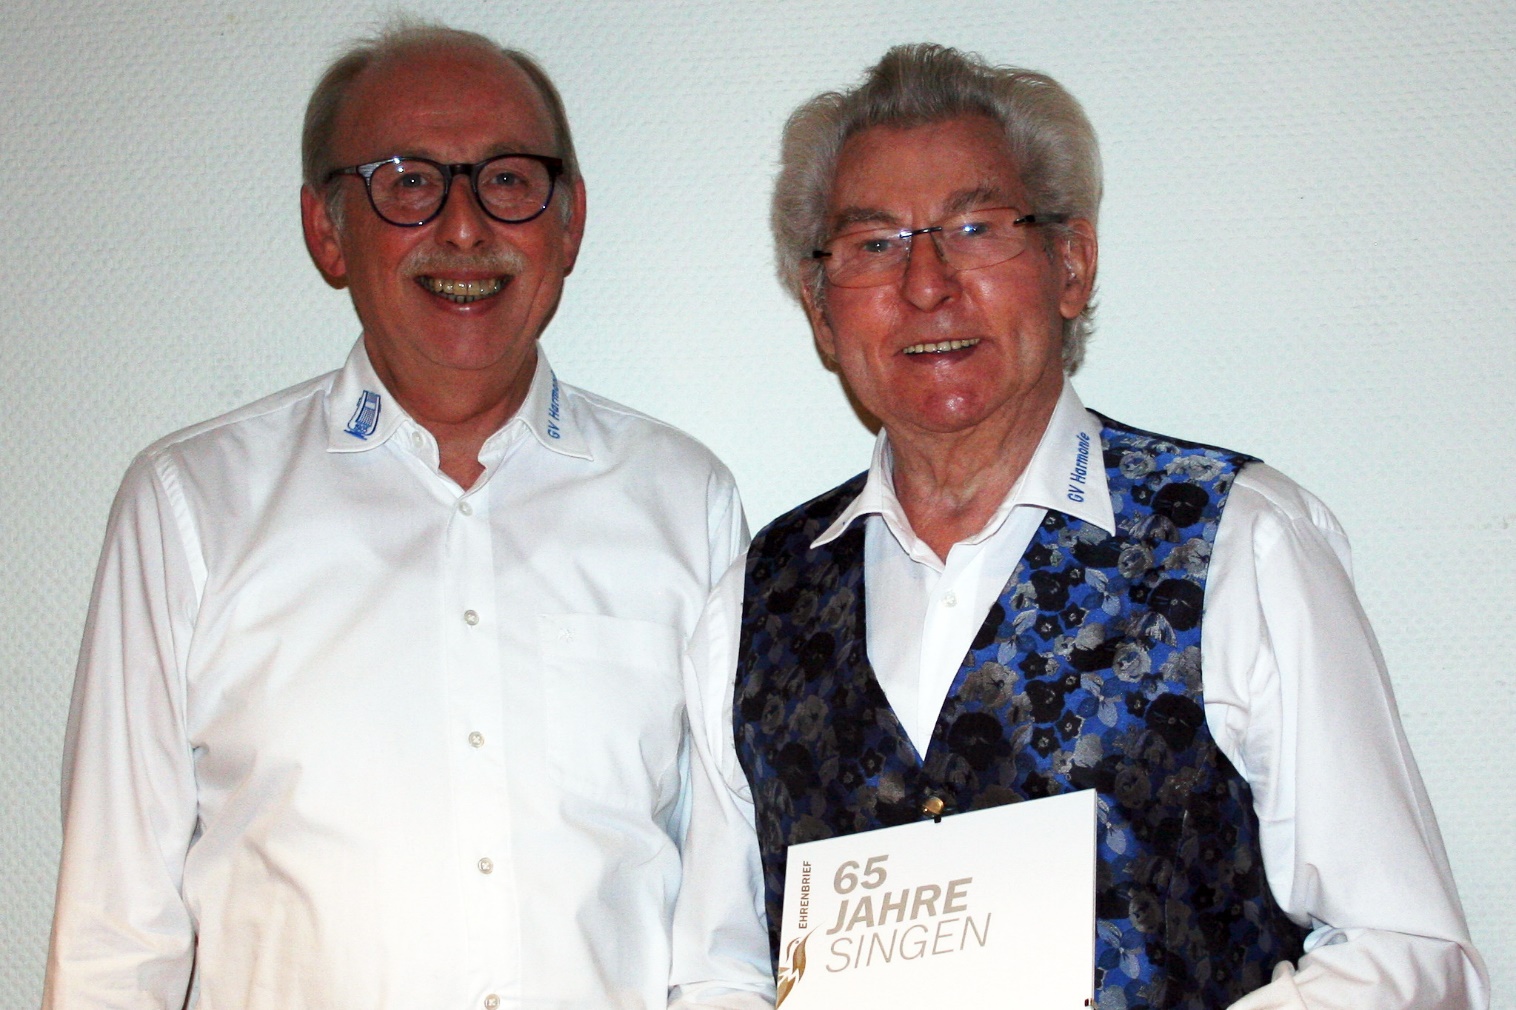 Foto: Der Harmonie-Vorsitzende Stefan Both überreicht Urkunde an Werner Sieben